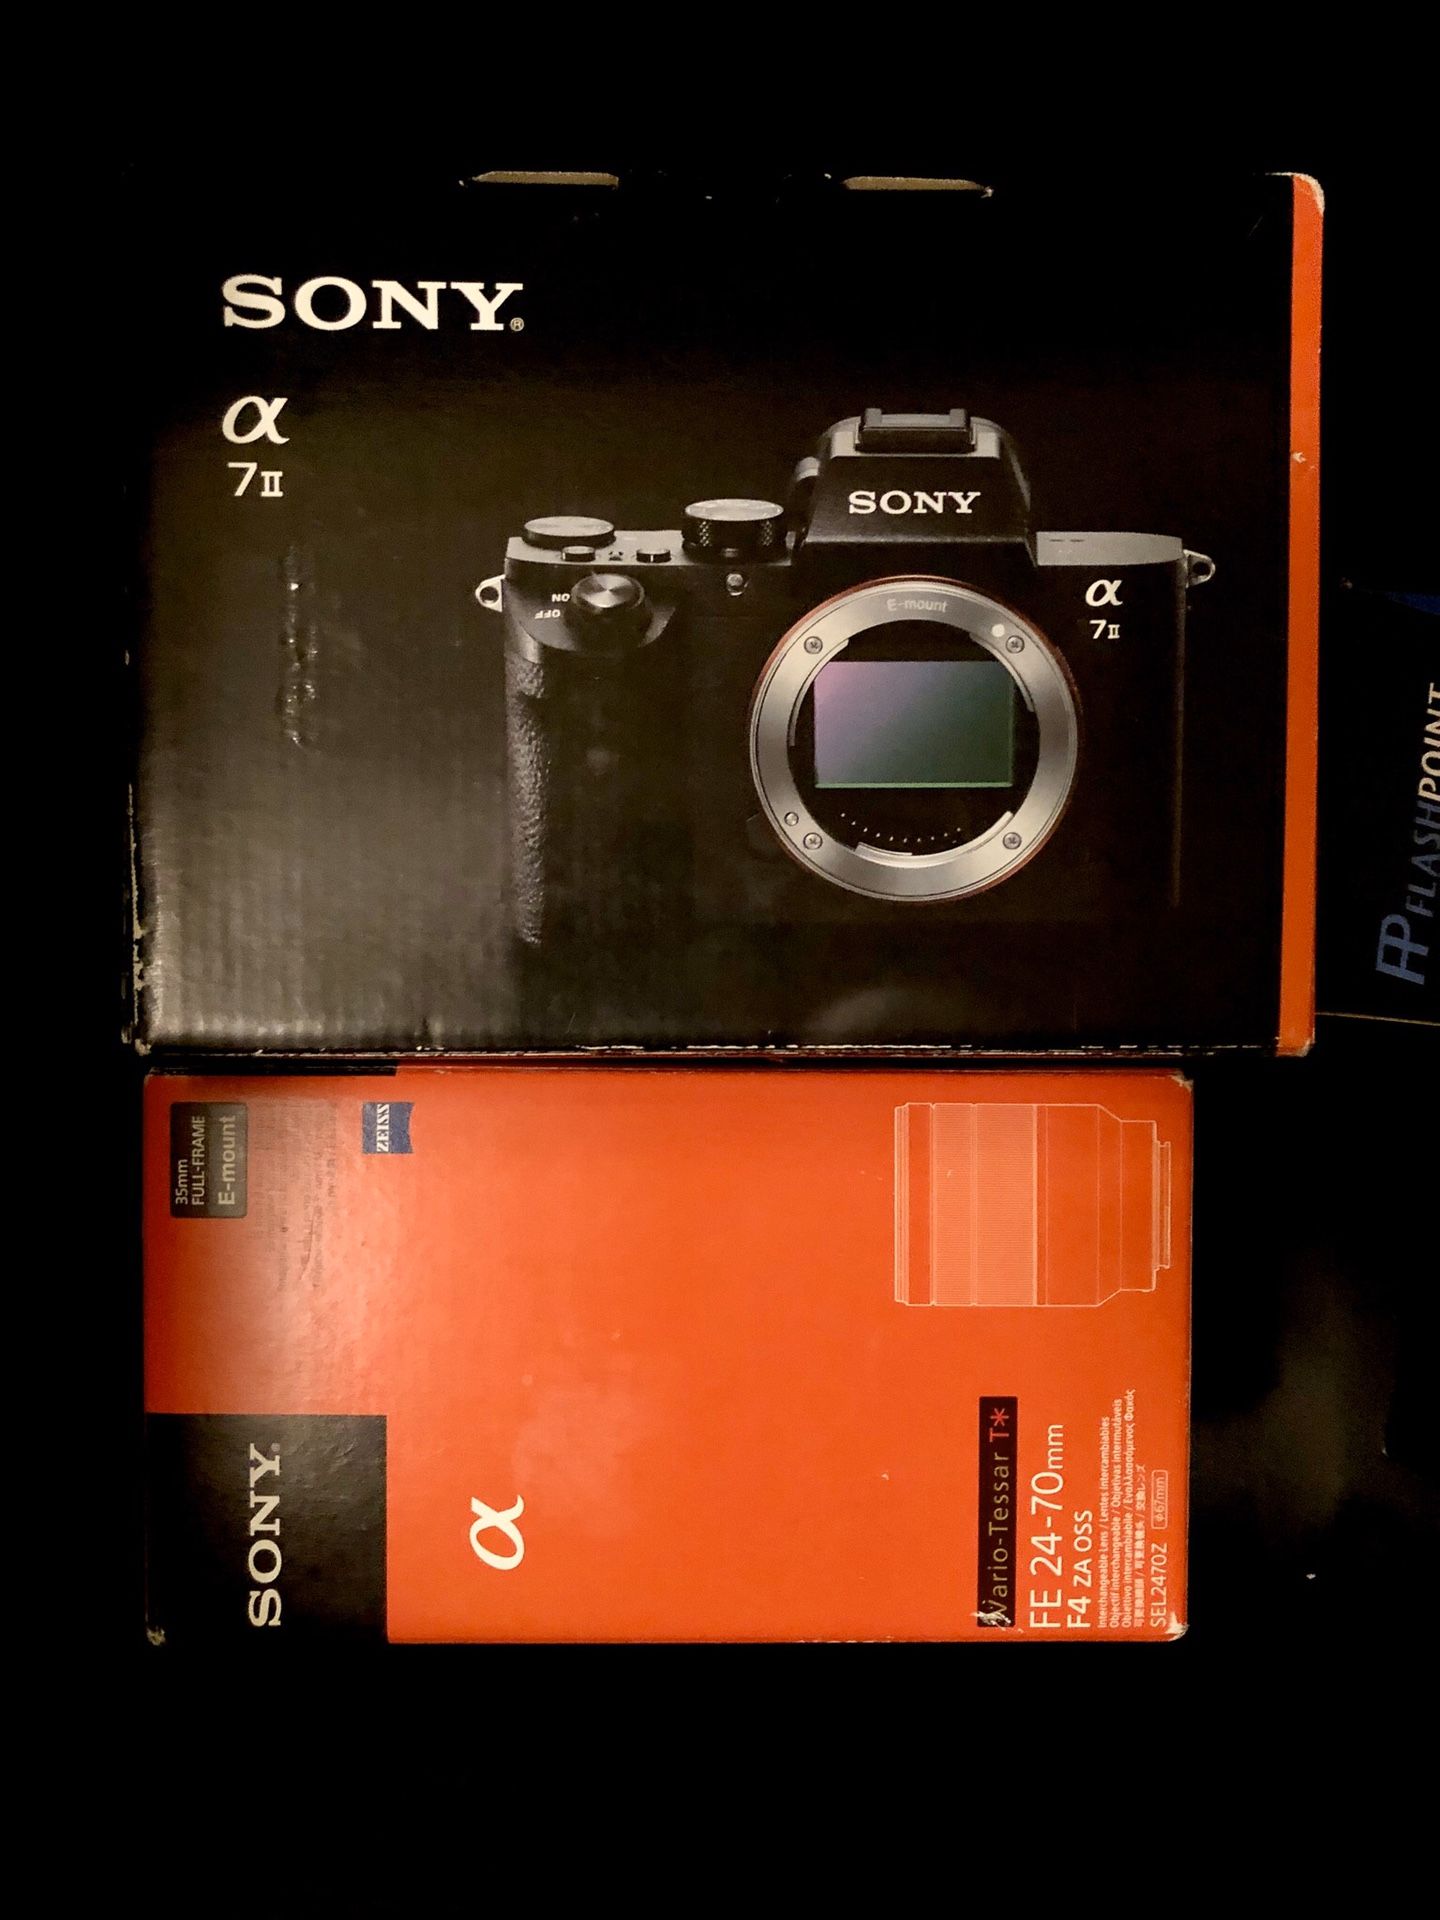 Sony A7ii digital camera DSLR + 24-70 lens + flashpoint flash + sigma mc-11